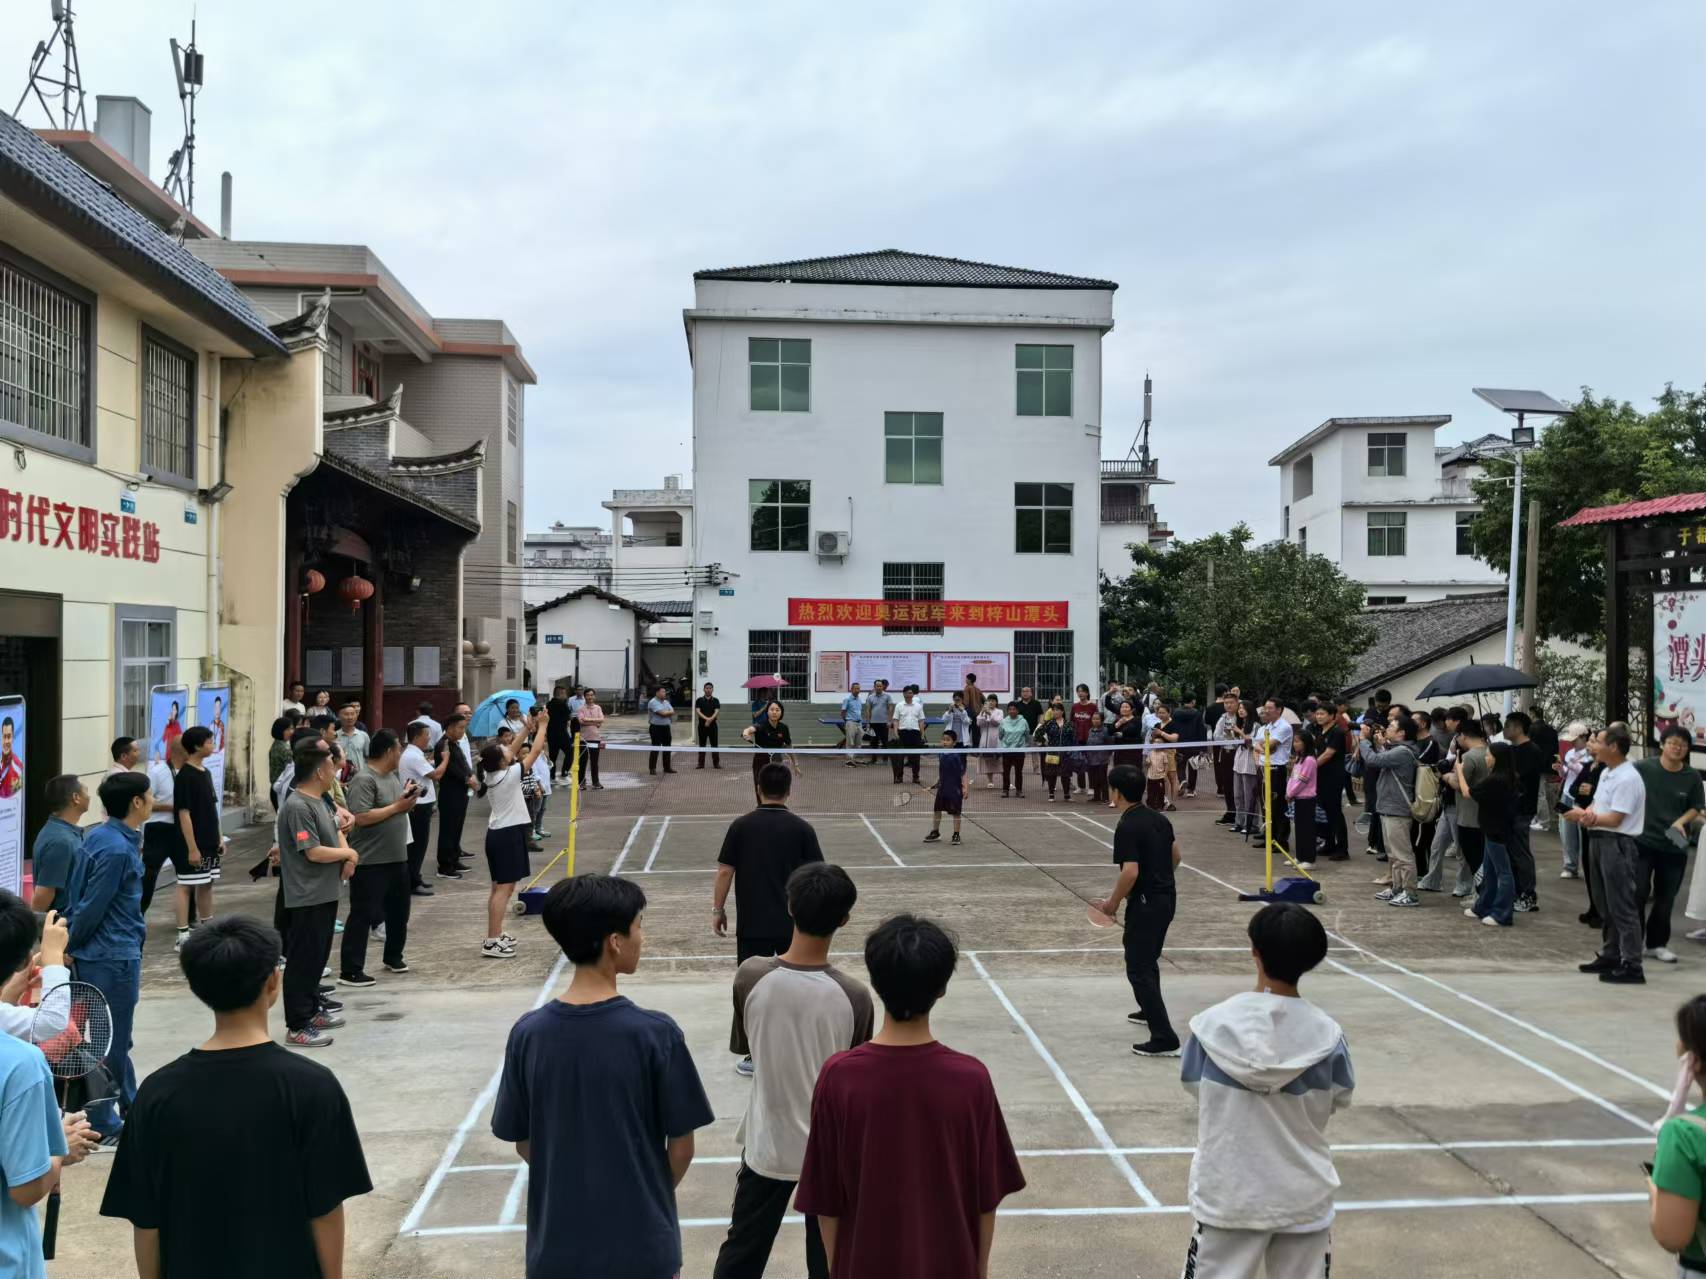 赵芸蕾与潭头社区居民进行羽毛球比赛。人民网记者杨磊摄